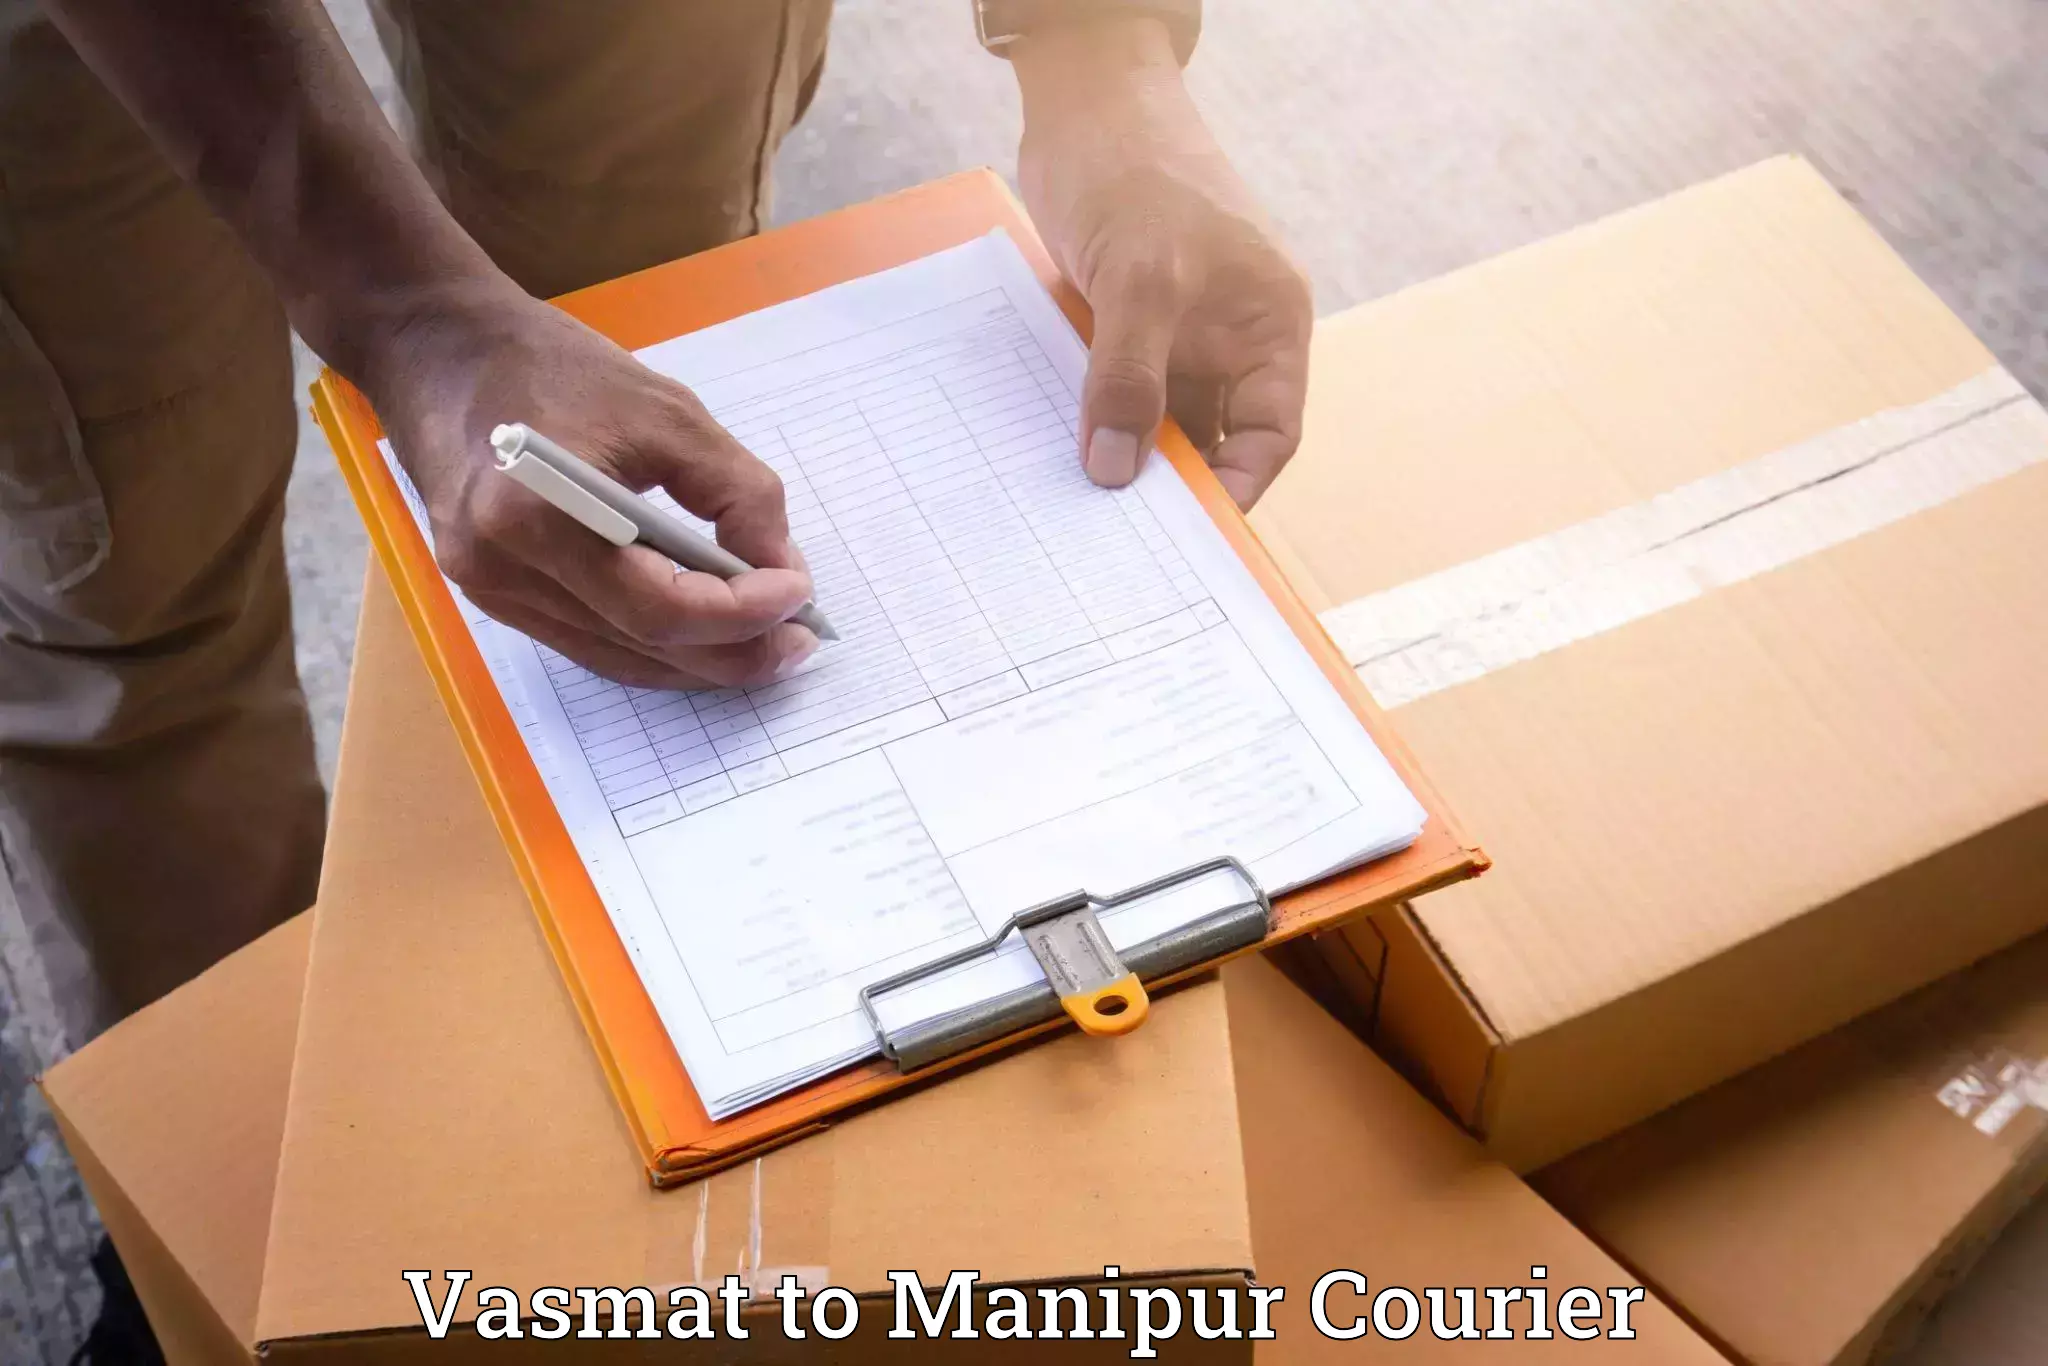 Stress-free moving Vasmat to Manipur